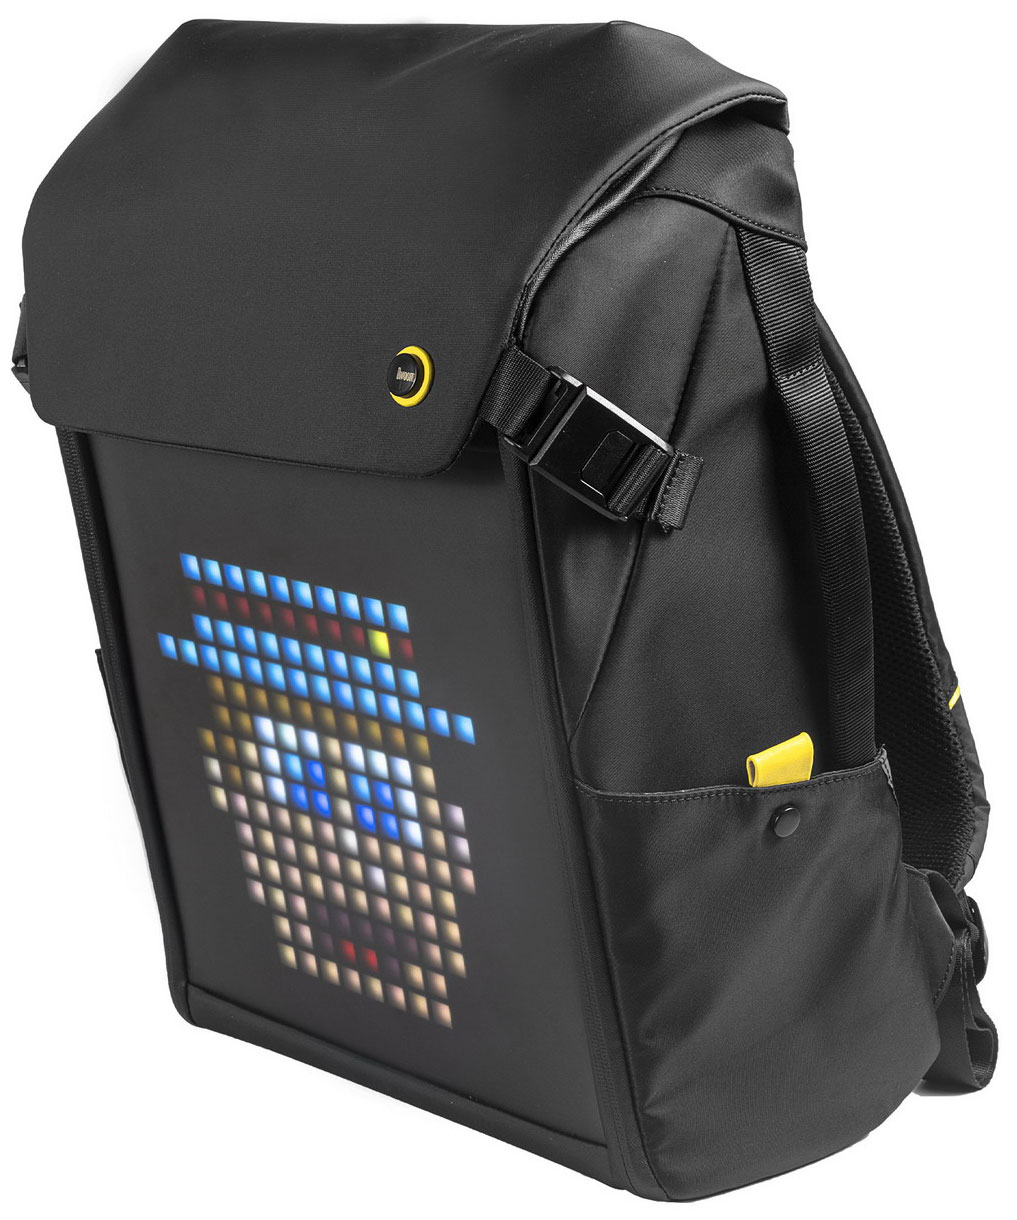 Рюкзак с пиксельным LED-экраном Divoom M рюкзак divoom с пиксельным экраном s синий